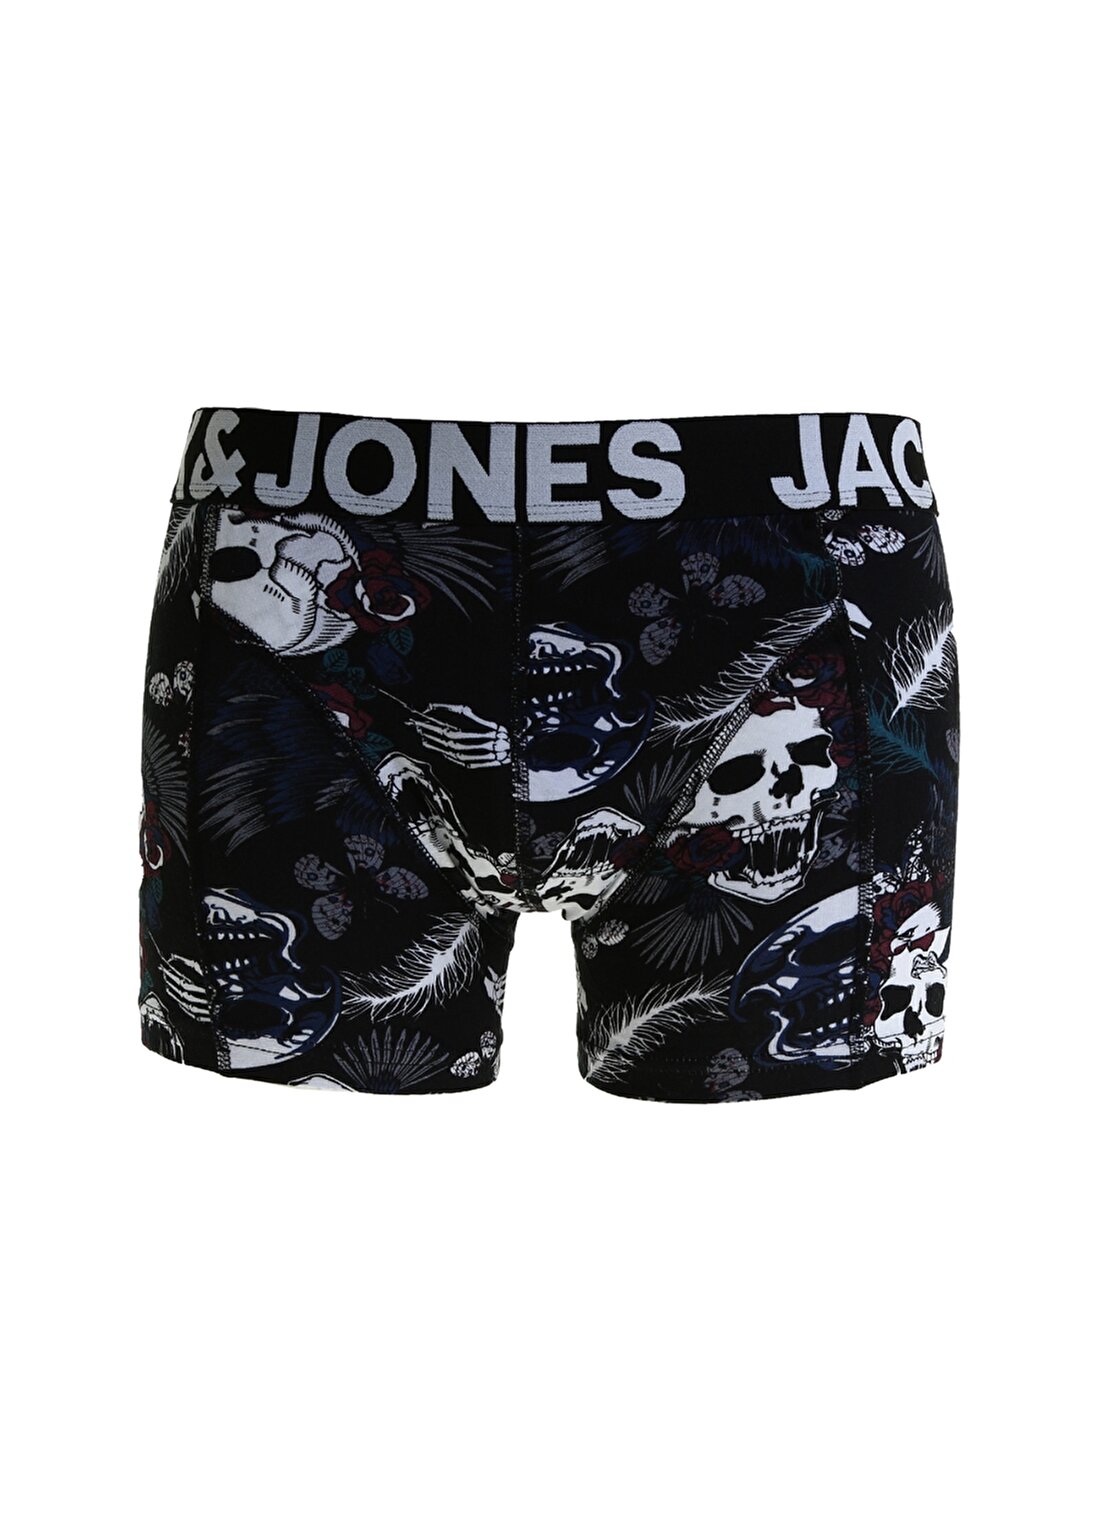 Jack & Jones 12183502 Boxer